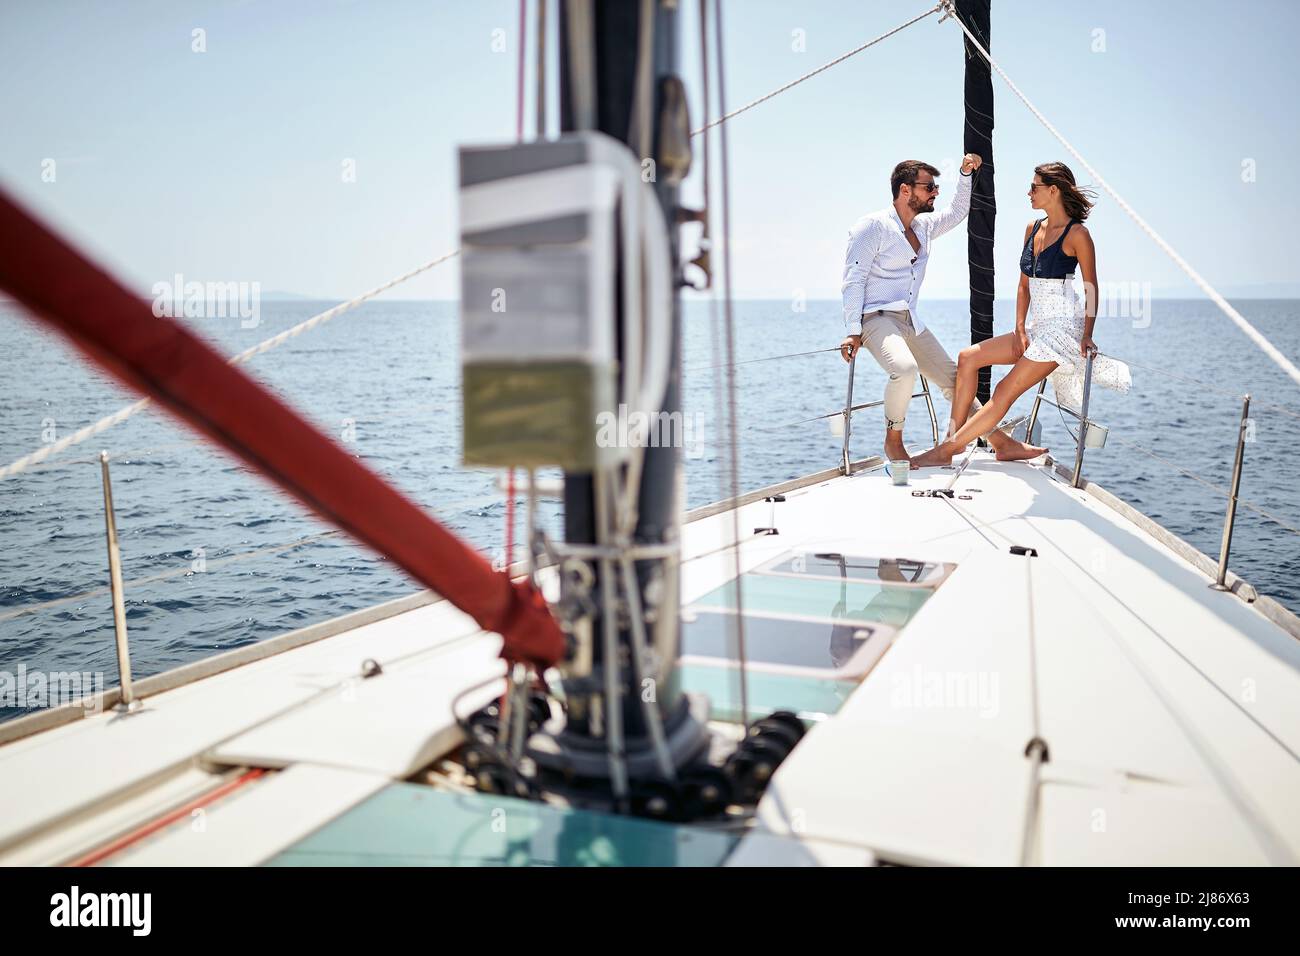 Una giovane coppia sta chiacchierando e posando per una foto sulla prua dello yacht mentre si gode un giro in una bella giornata di sole sul mare. Estate, mare, vacanza Foto Stock